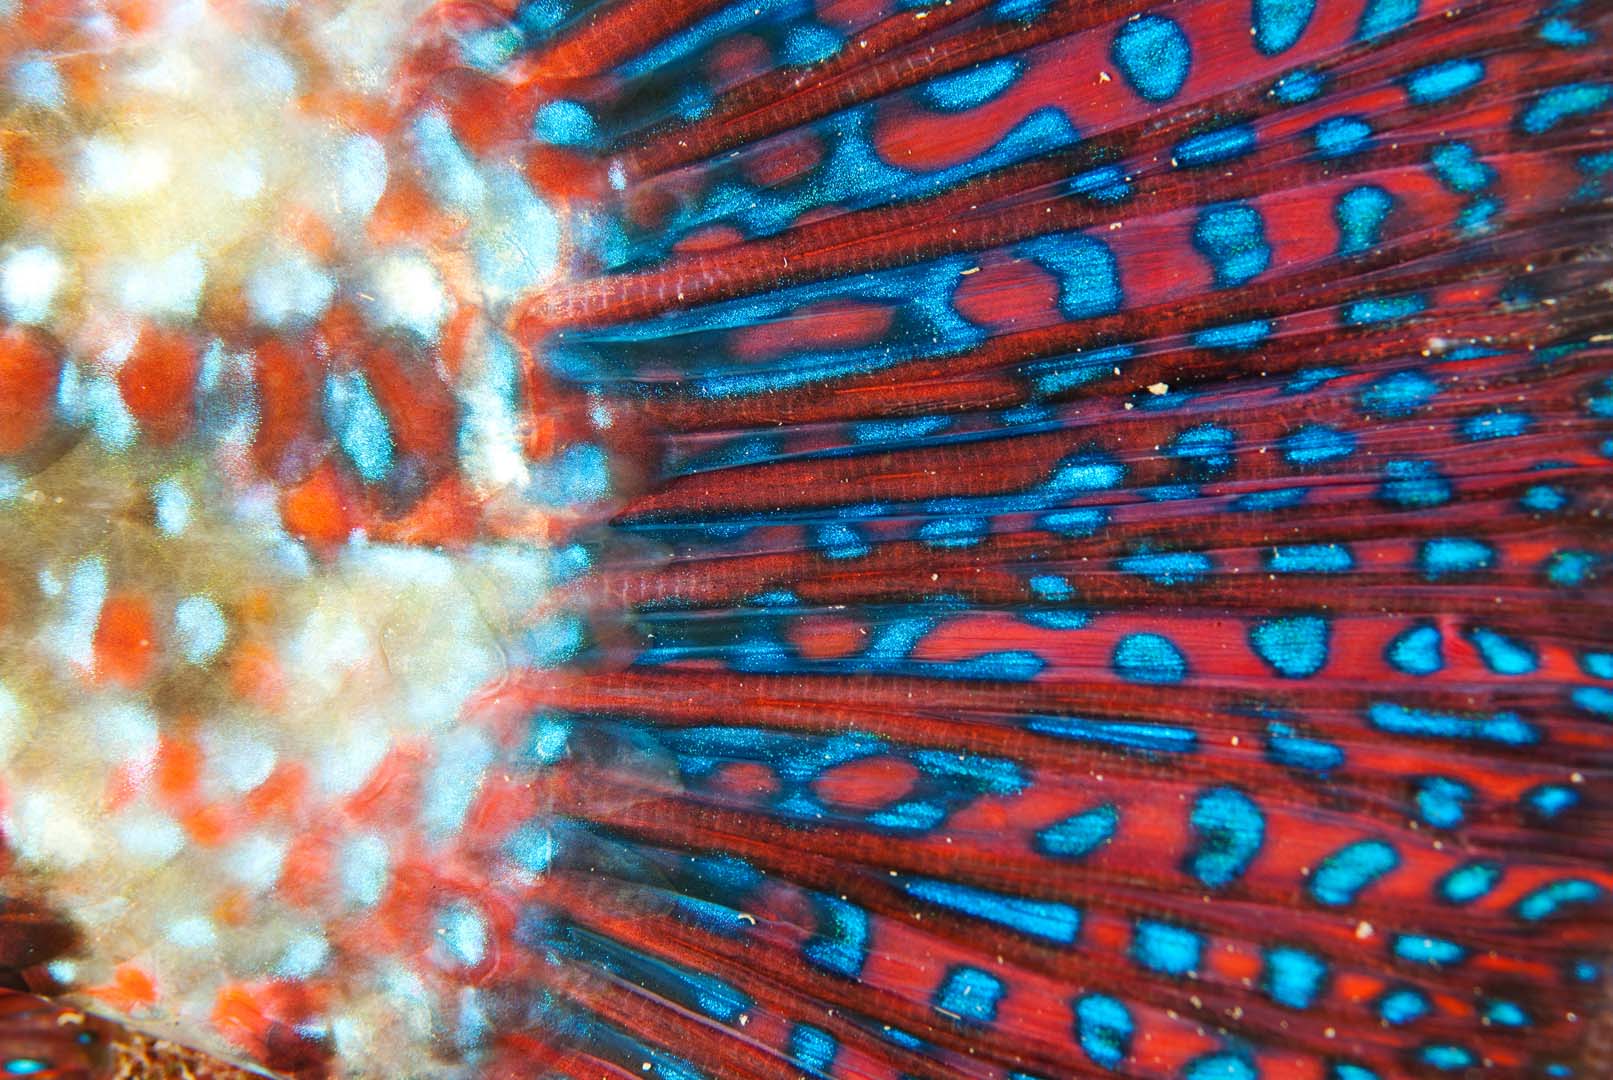 Detalle de los colores de la aleta caudal de un macho en época de reproducción.